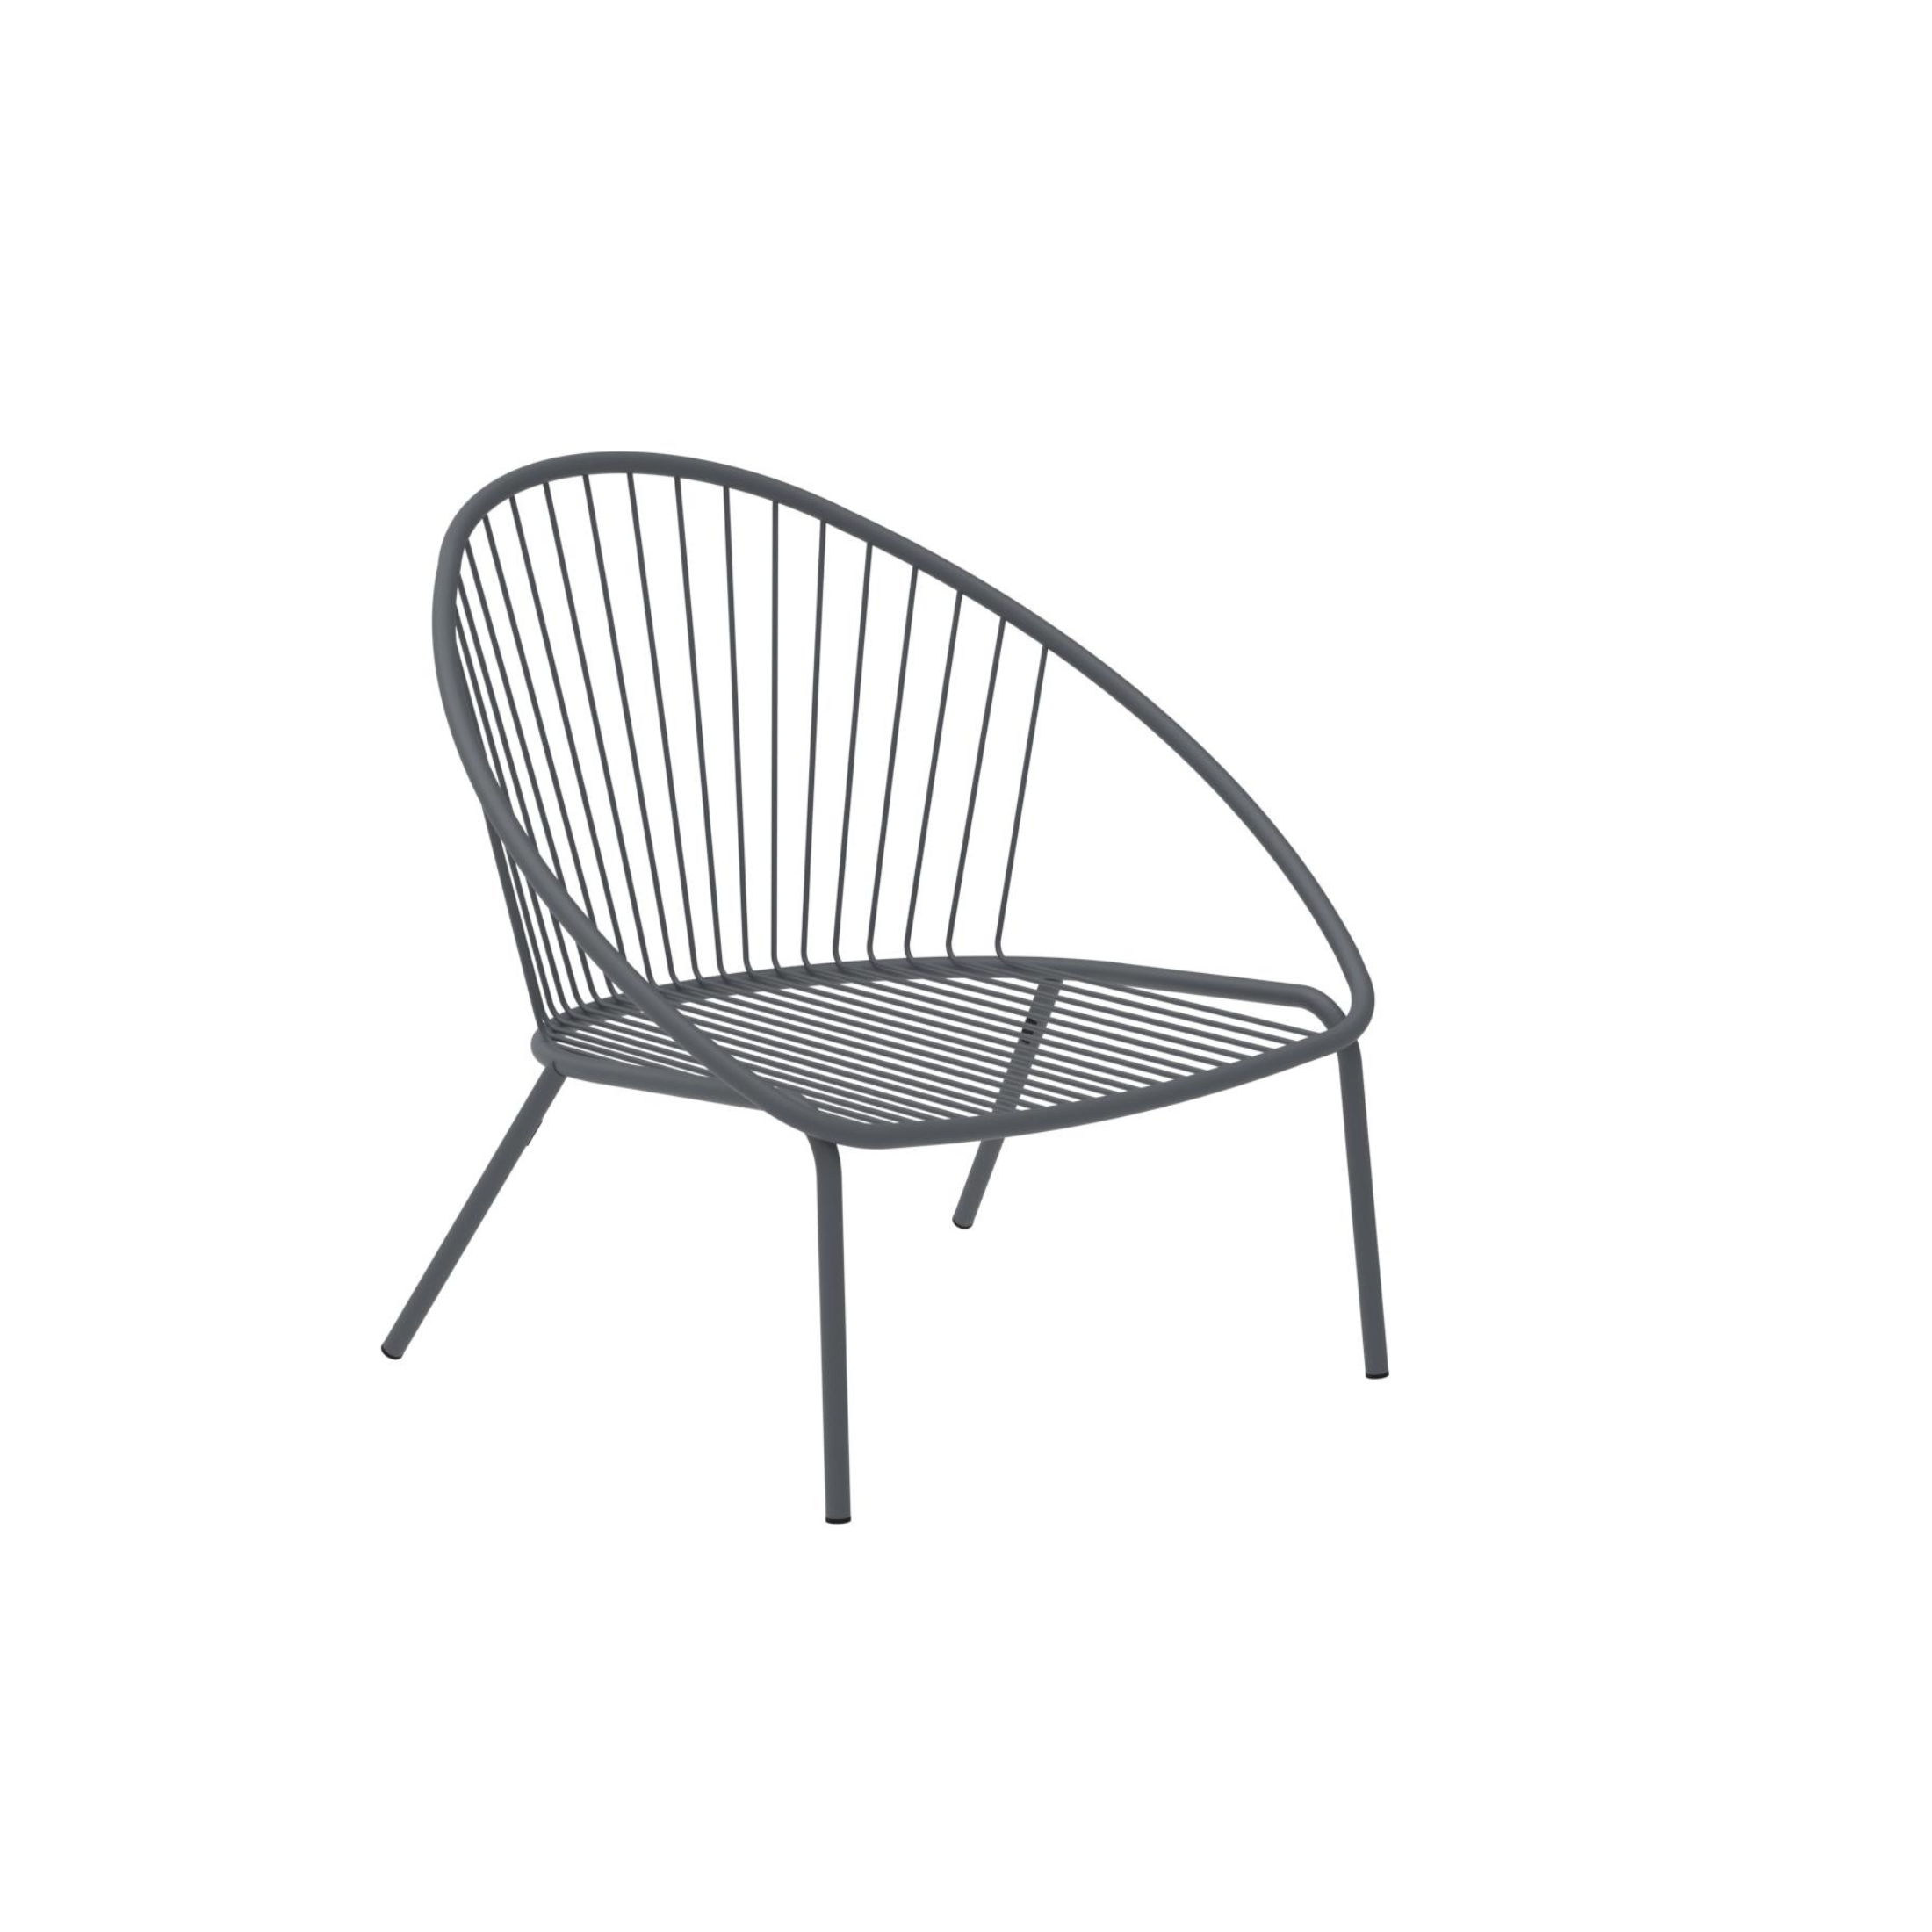 Poltrona bassa da giardino in metallo "Aria" sedia lounge impilabile cm 82x86 87h